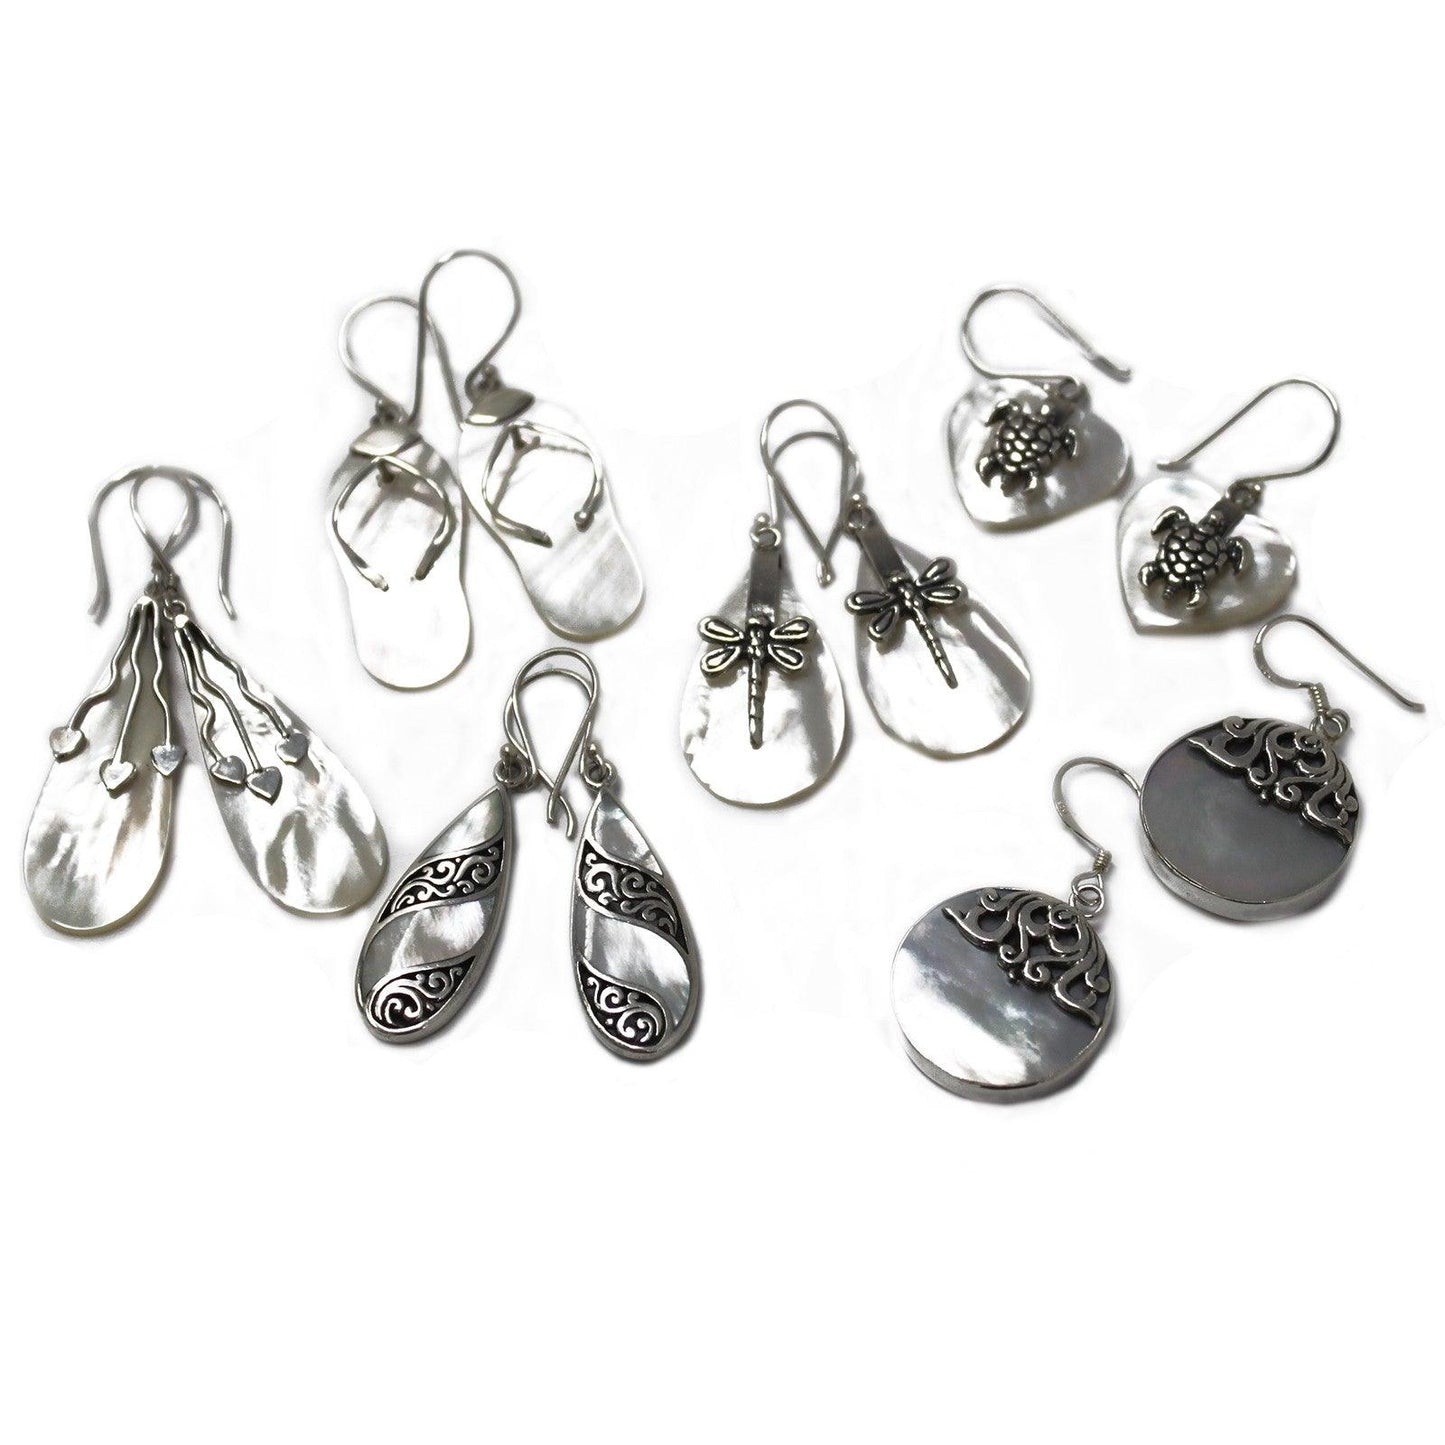 Shell & Silver Earrings - Teardrop- MOP - DuvetDay.co.uk